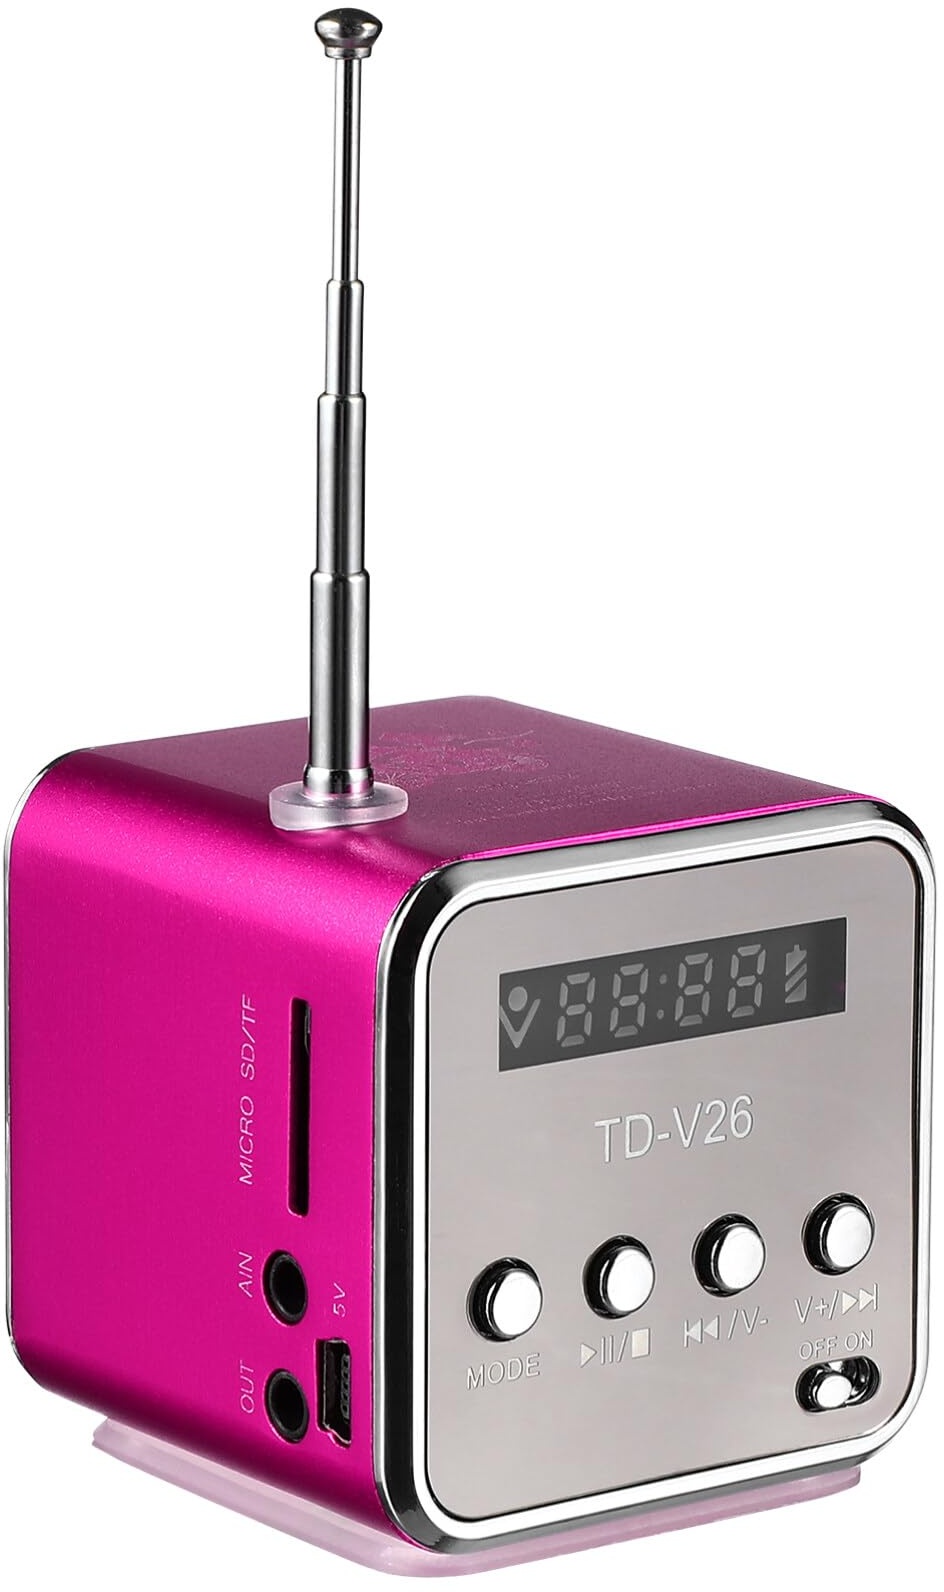 Hemobllo Mini Lautsprecher - Tragbares Lautsprecher mit Radio, LED Anzeige, USB Anschluss, Micro SD Kartensteckplatz, Kopfhöreranschluss, Kleiner Kabelloser Lautsprecher